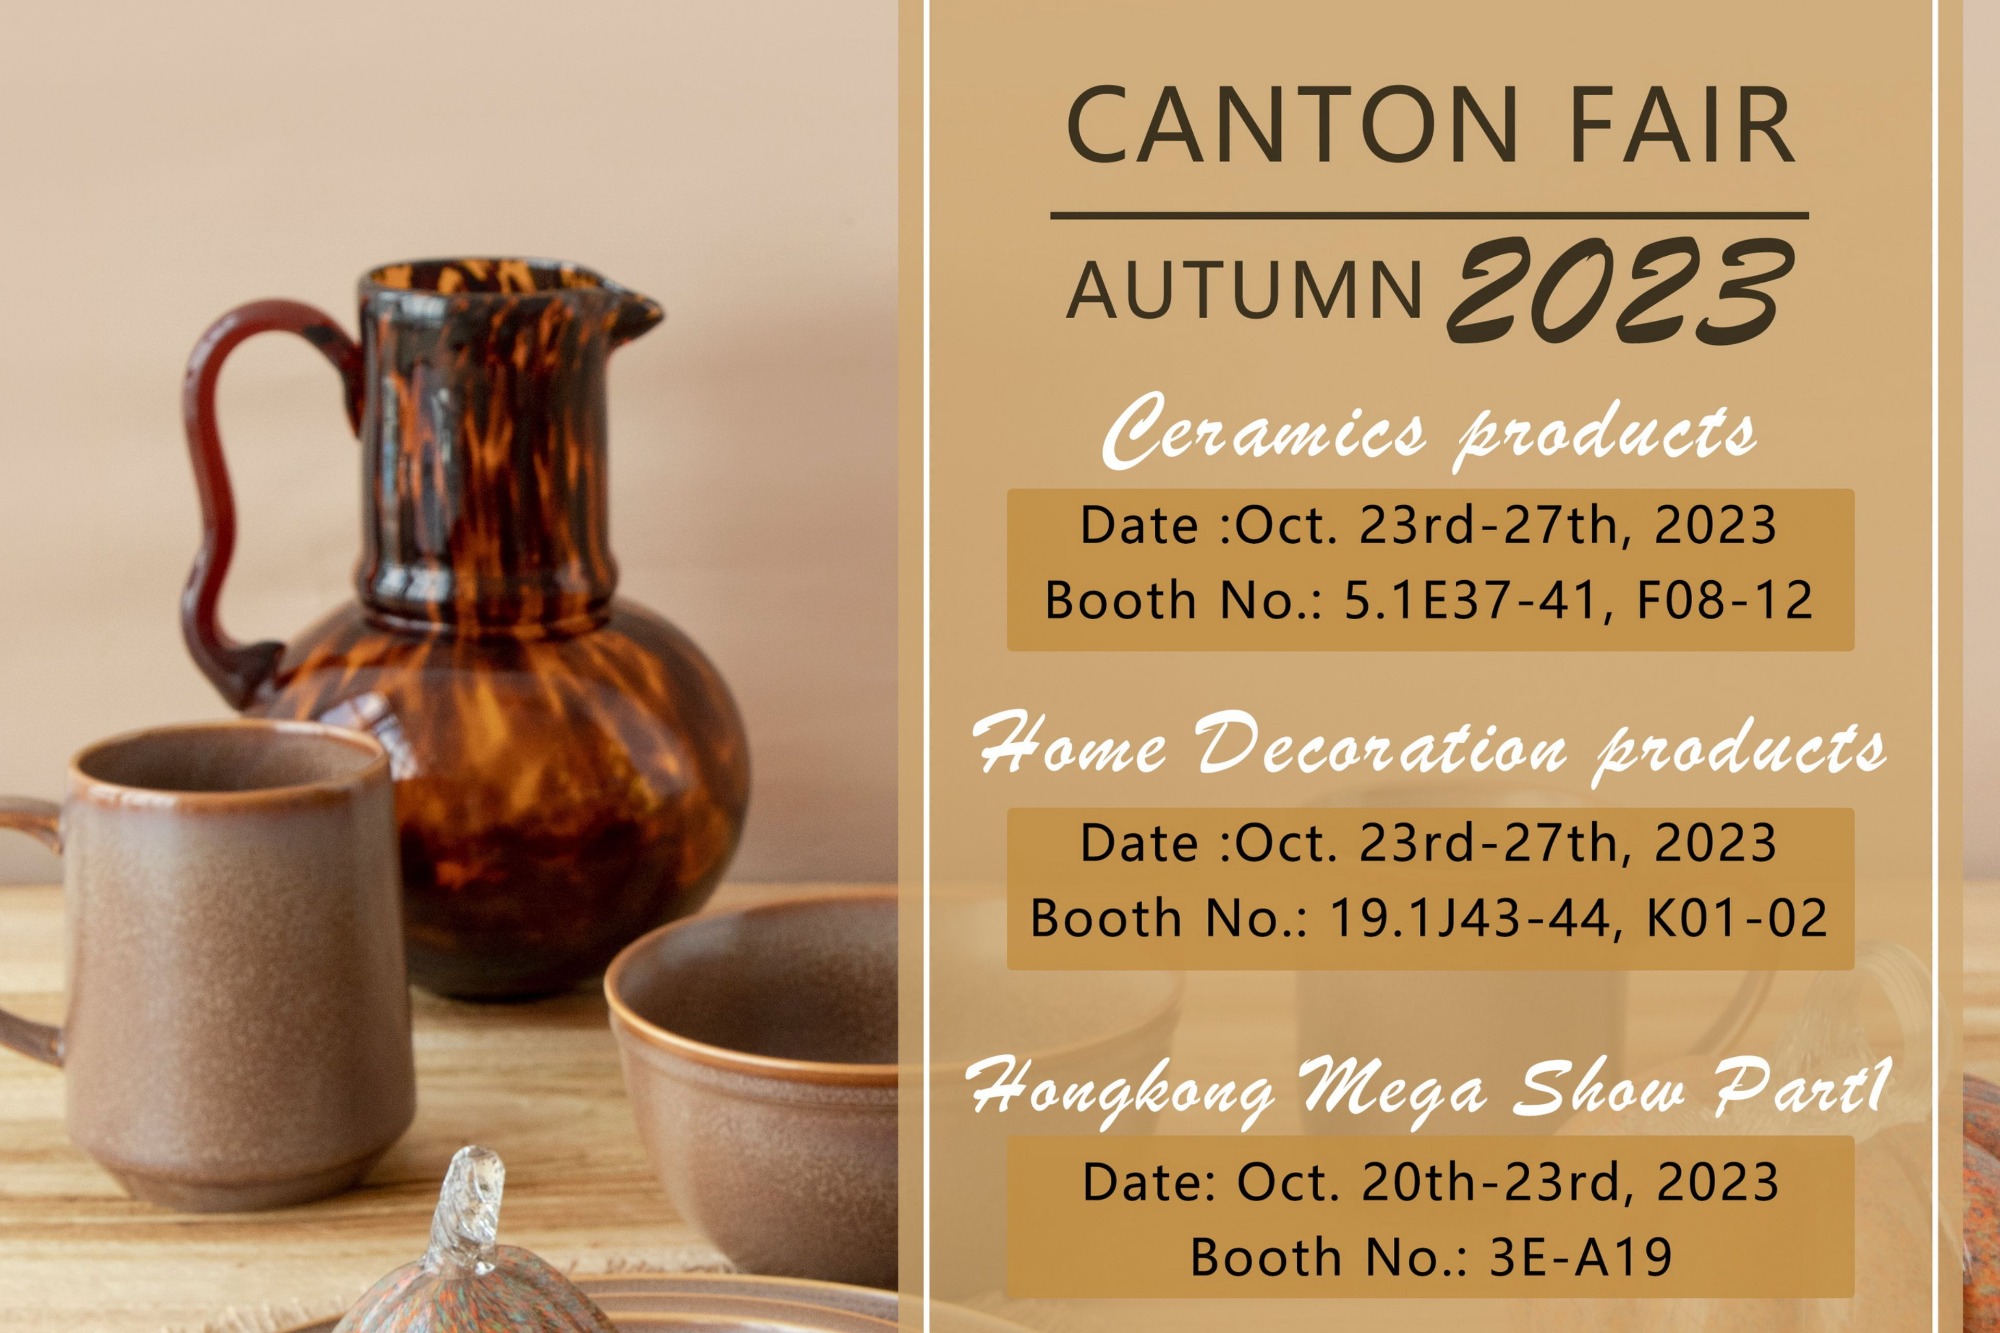 Joyye 2023 Autumn Canton Fair Invitation